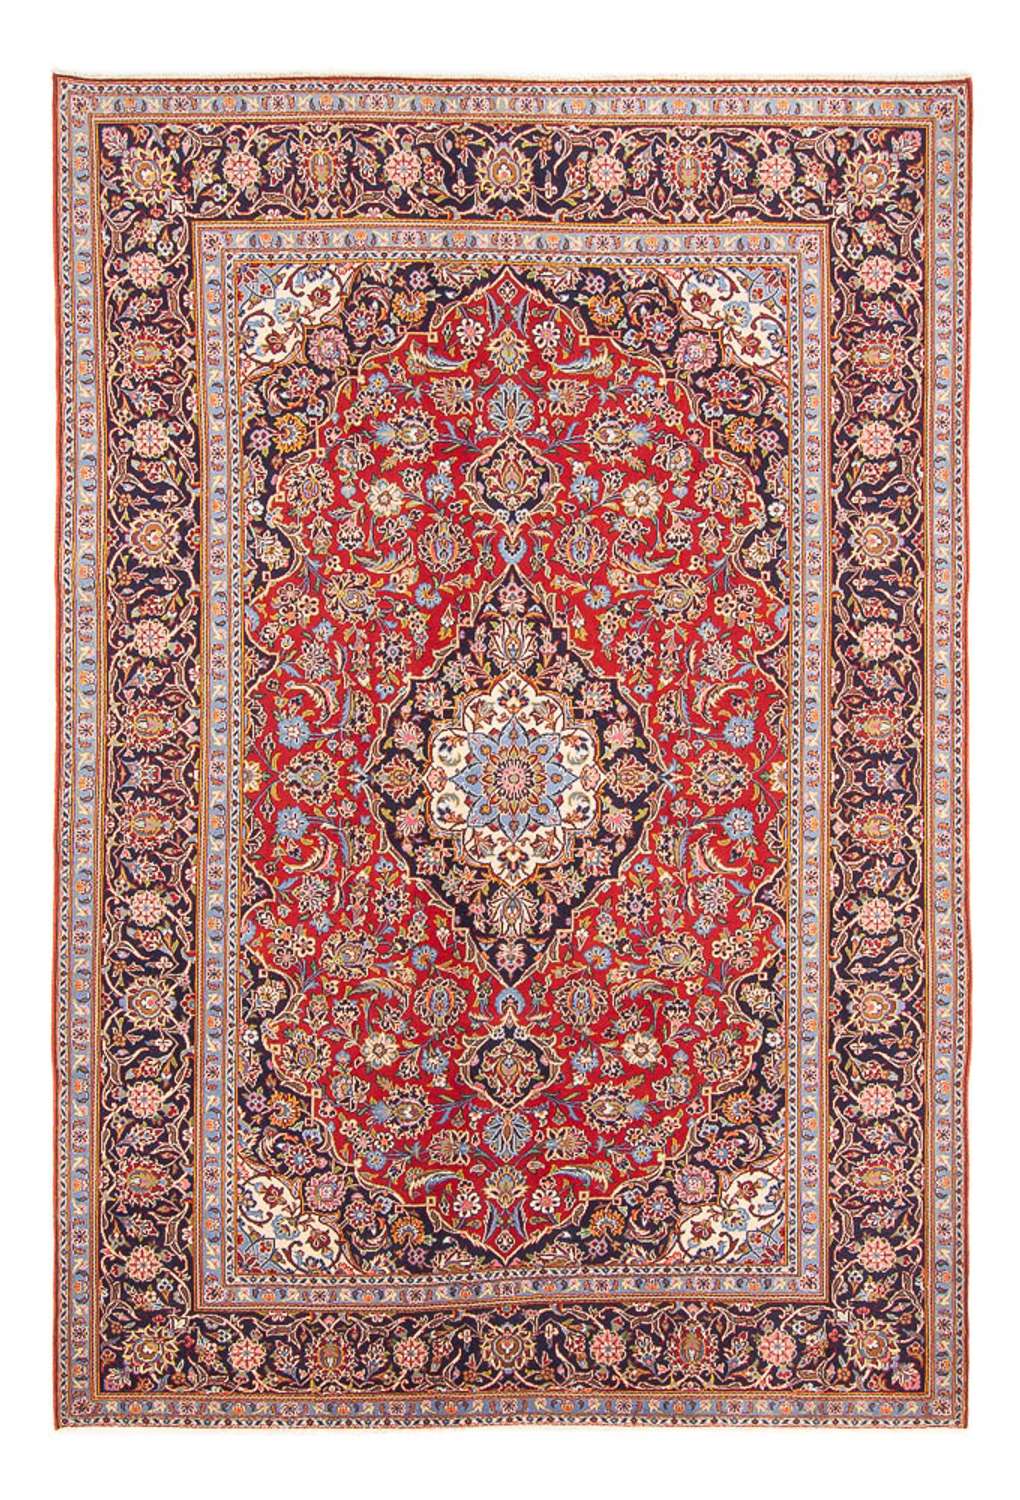 Tapete persa - Keshan - 280 x 190 cm - vermelho